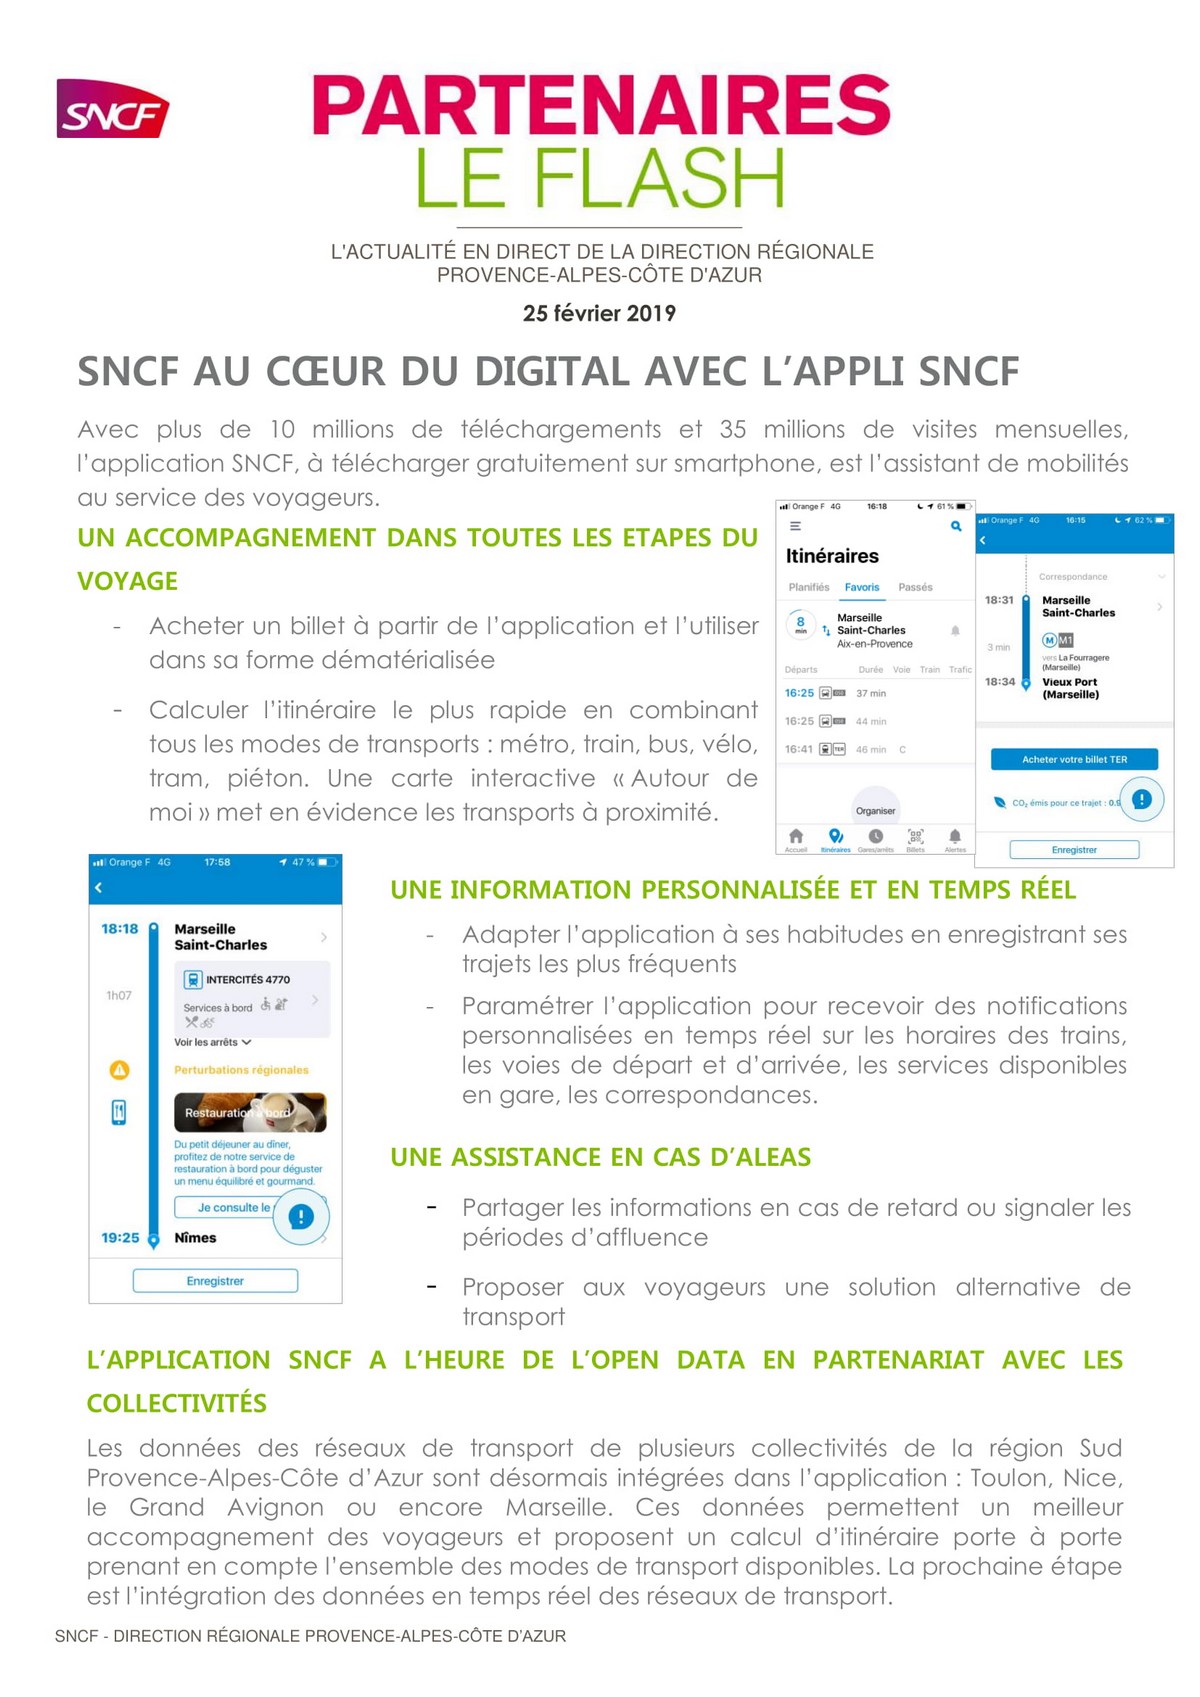 Partenaires Le Flash - appli SNCF-1